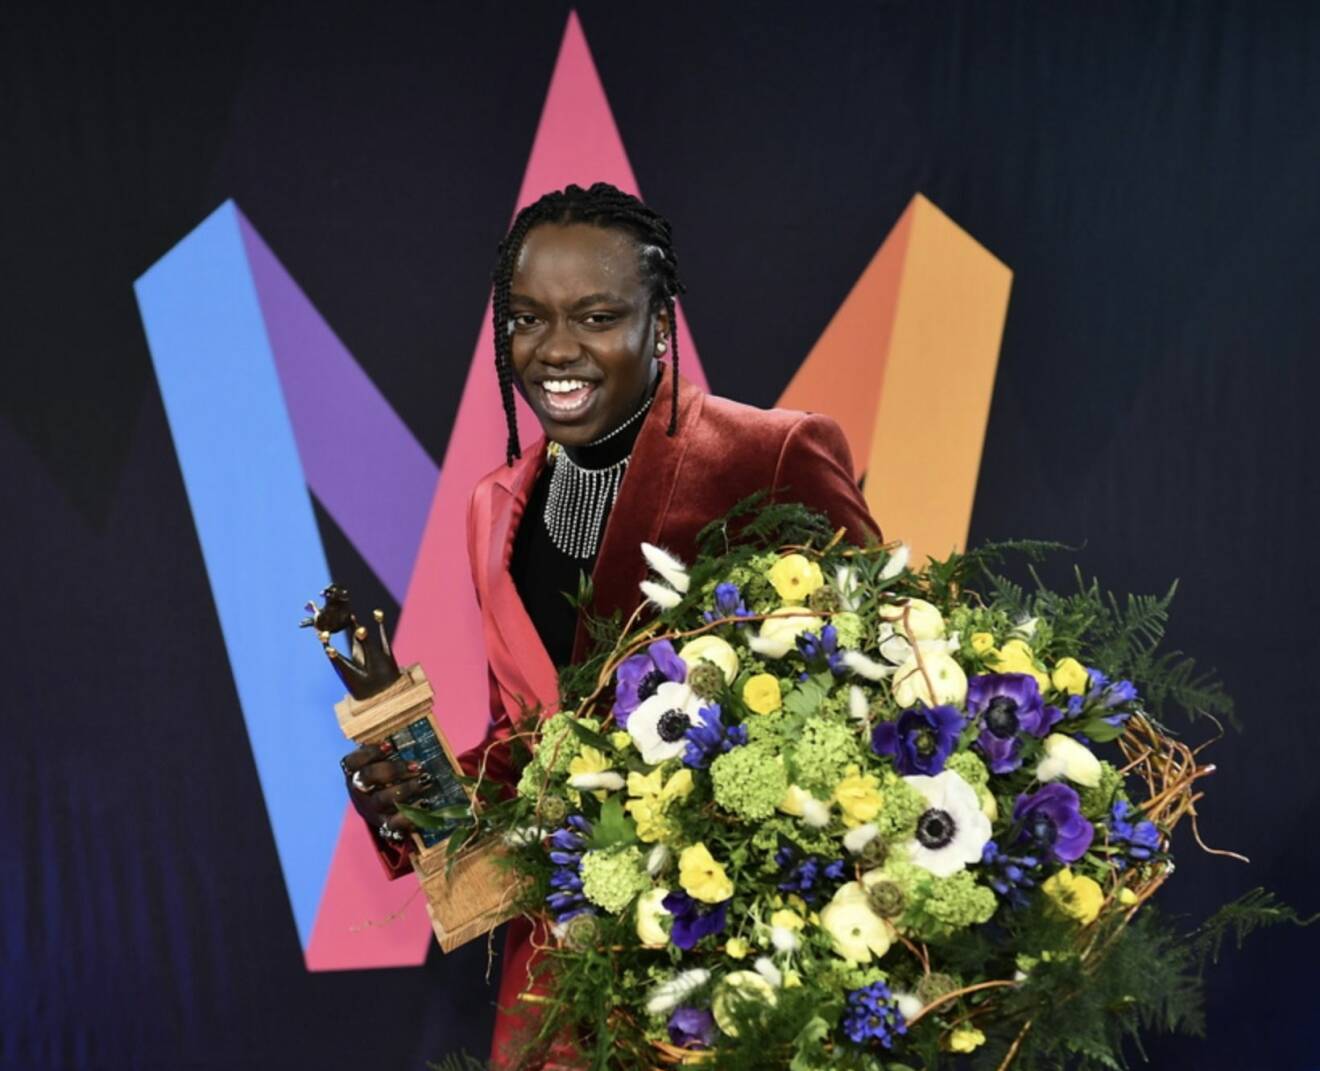 Tusse vann Melodifestivalen 2021 med låten Voices, glad med bukett och pokal